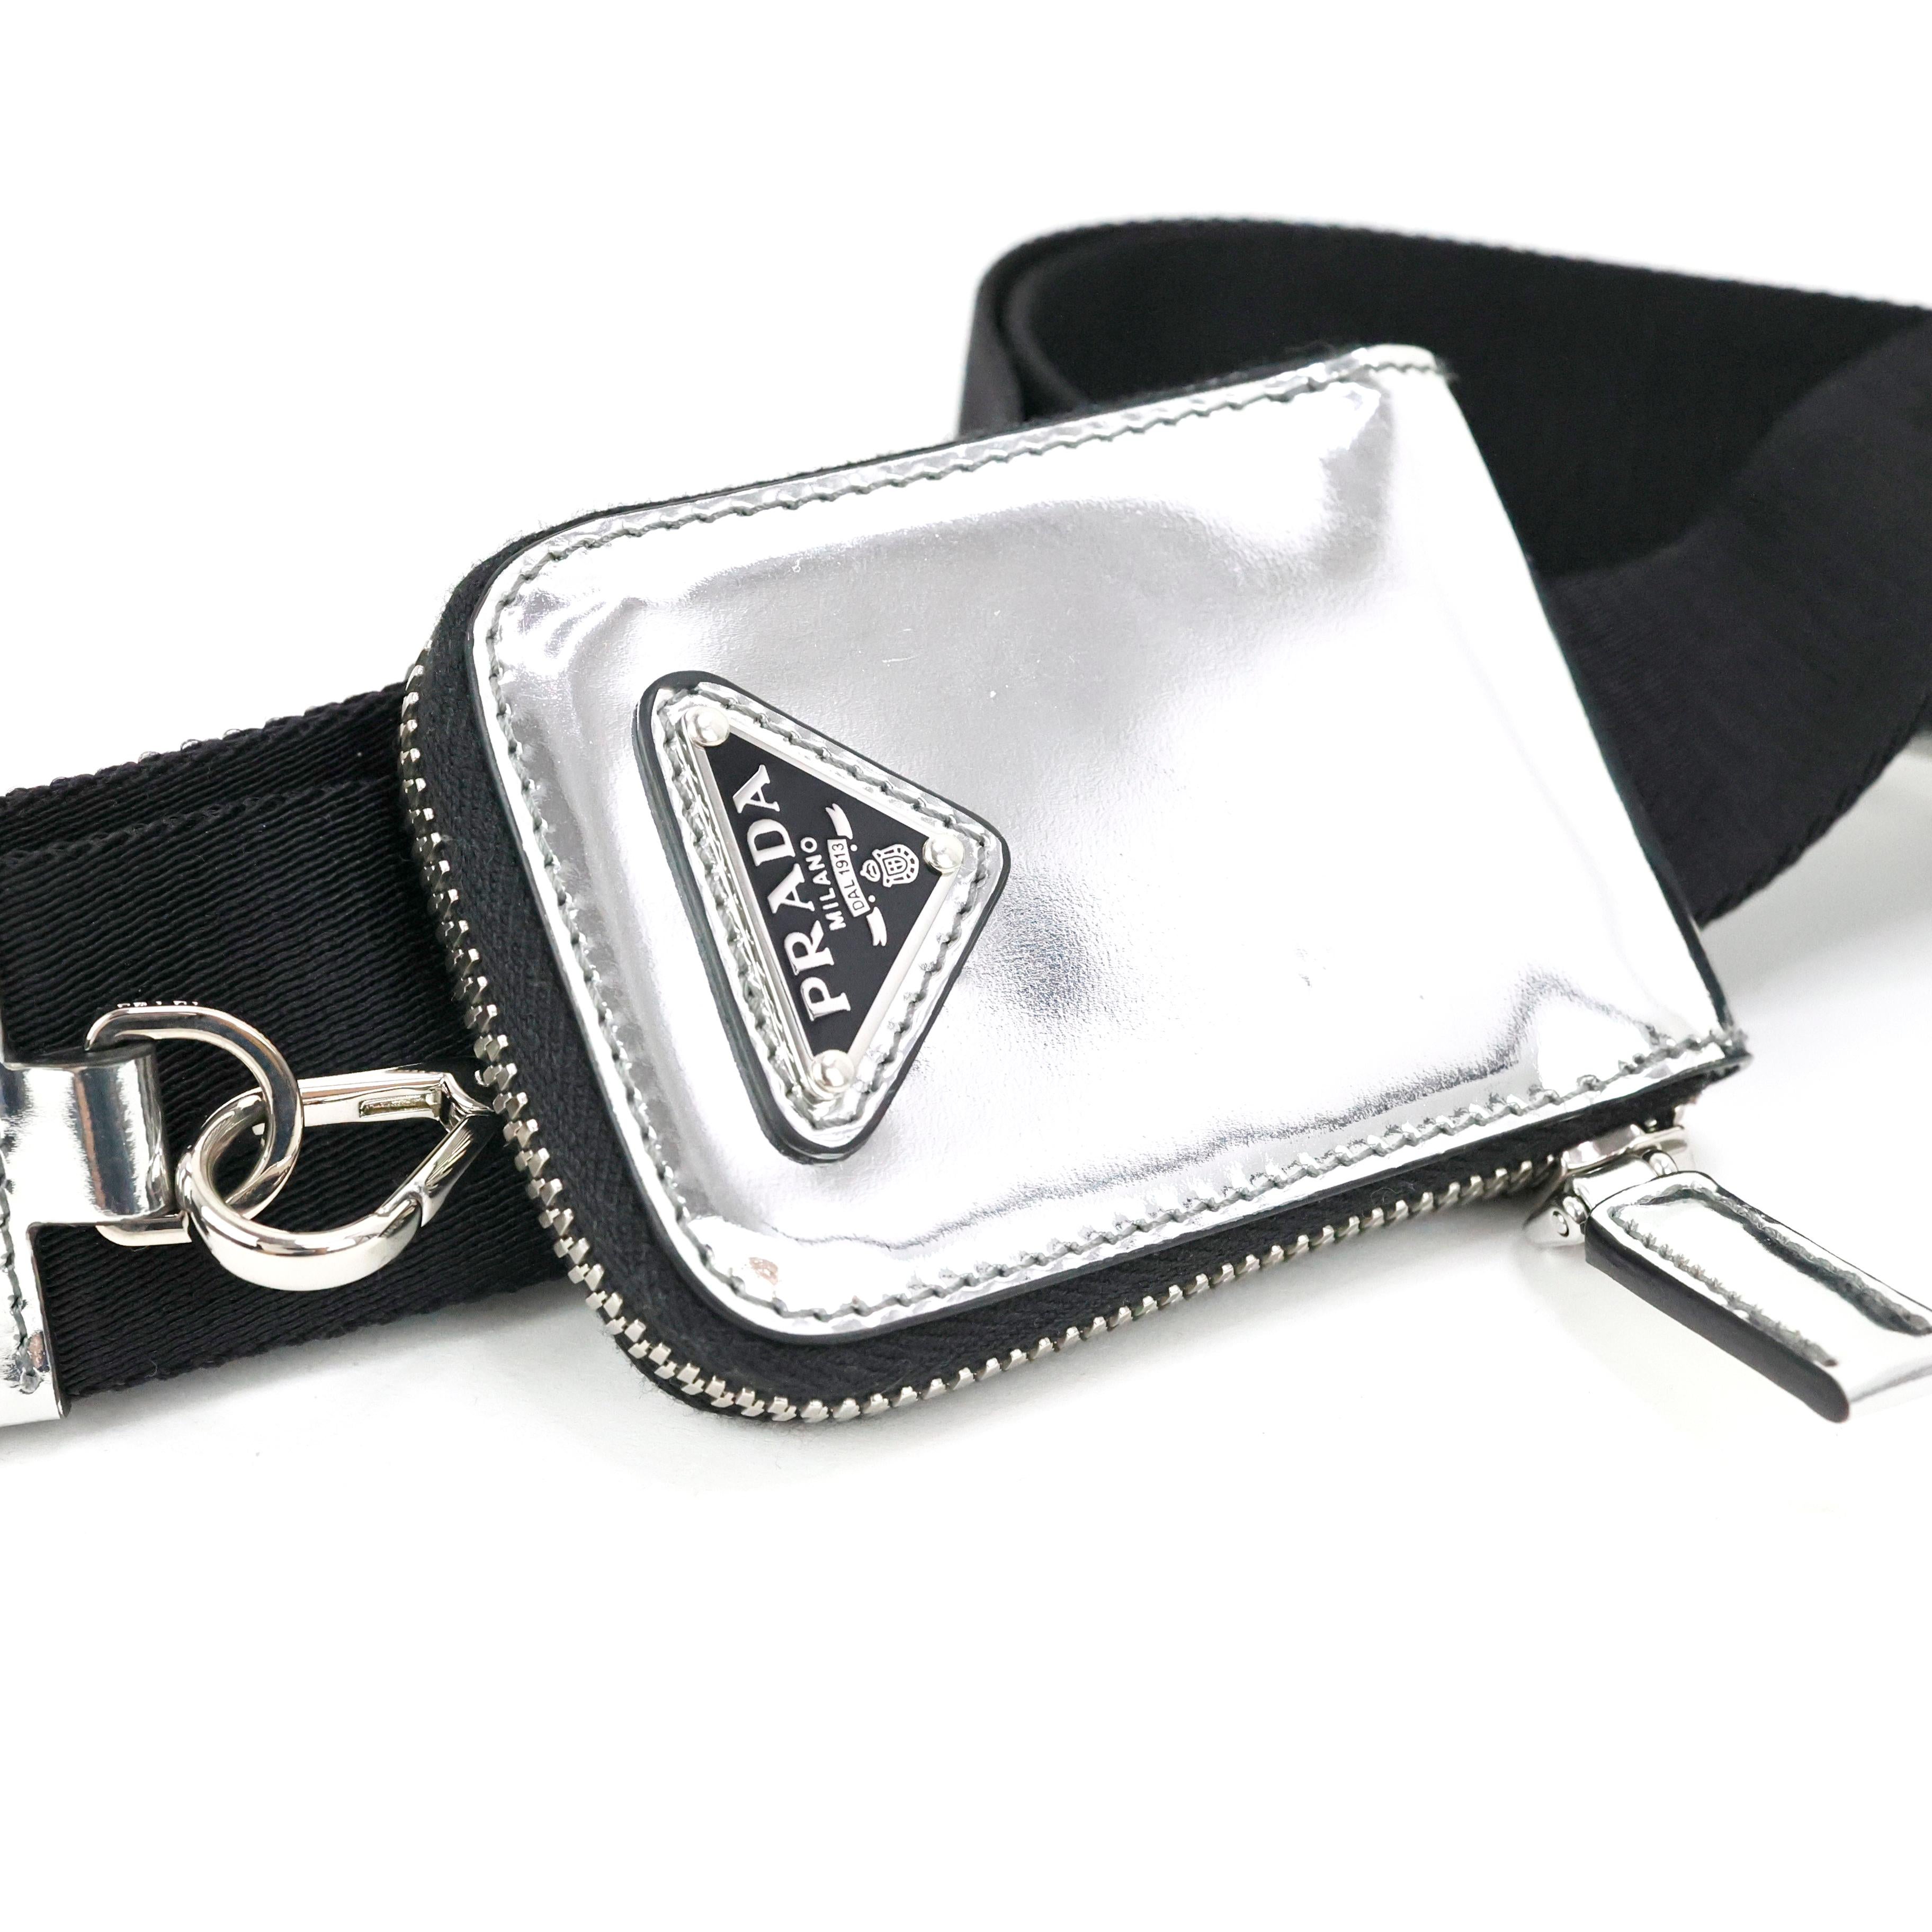 Prada Crossbody Bag In Silver Spazzolato Leather In Good Condition For Sale In Bressanone, IT